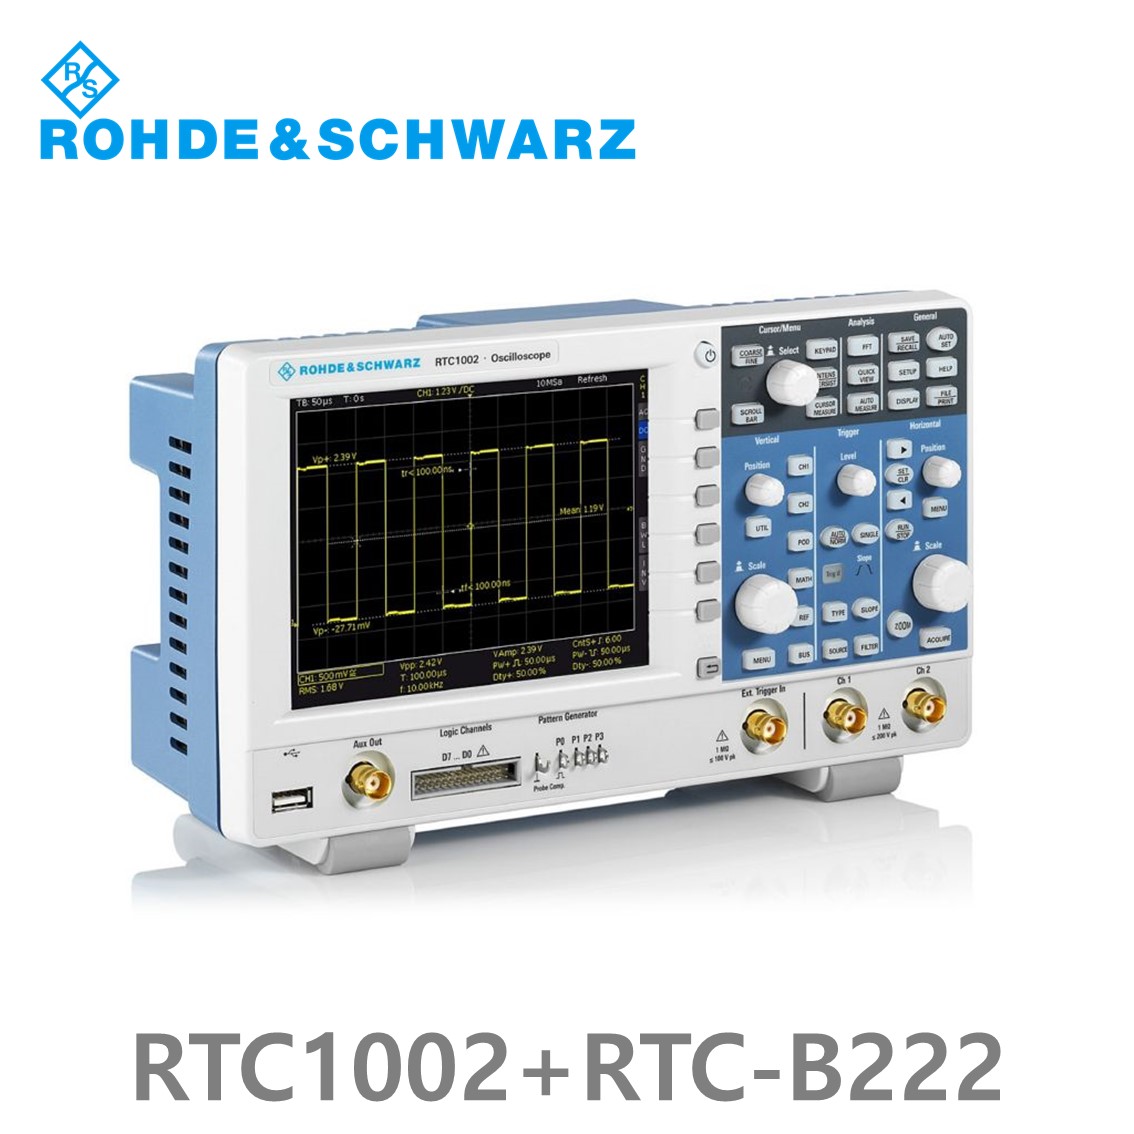 [로데슈바르즈] RTC1002+RTC-B222  2채널/200MHz/2Gs/2Mpts/디지털8채널 (1335.7500P22) 디지탈오실로스코프